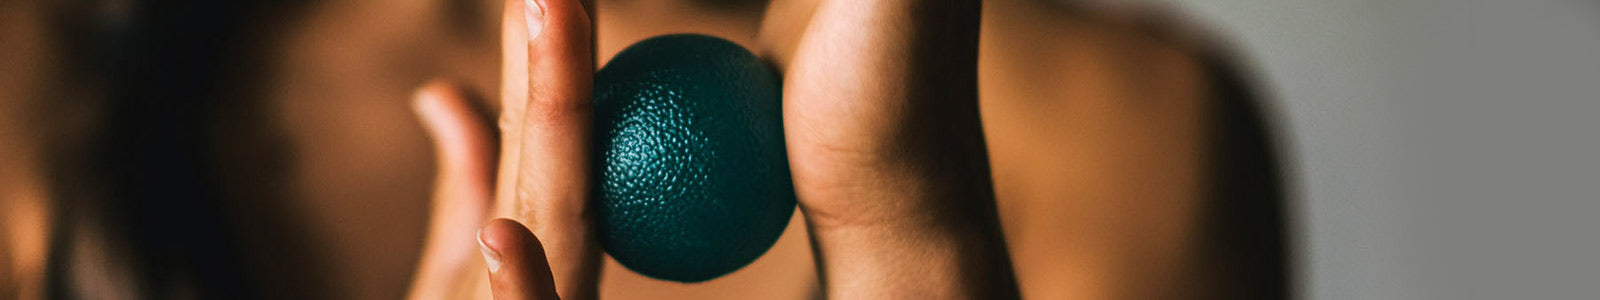 Green ball between hands